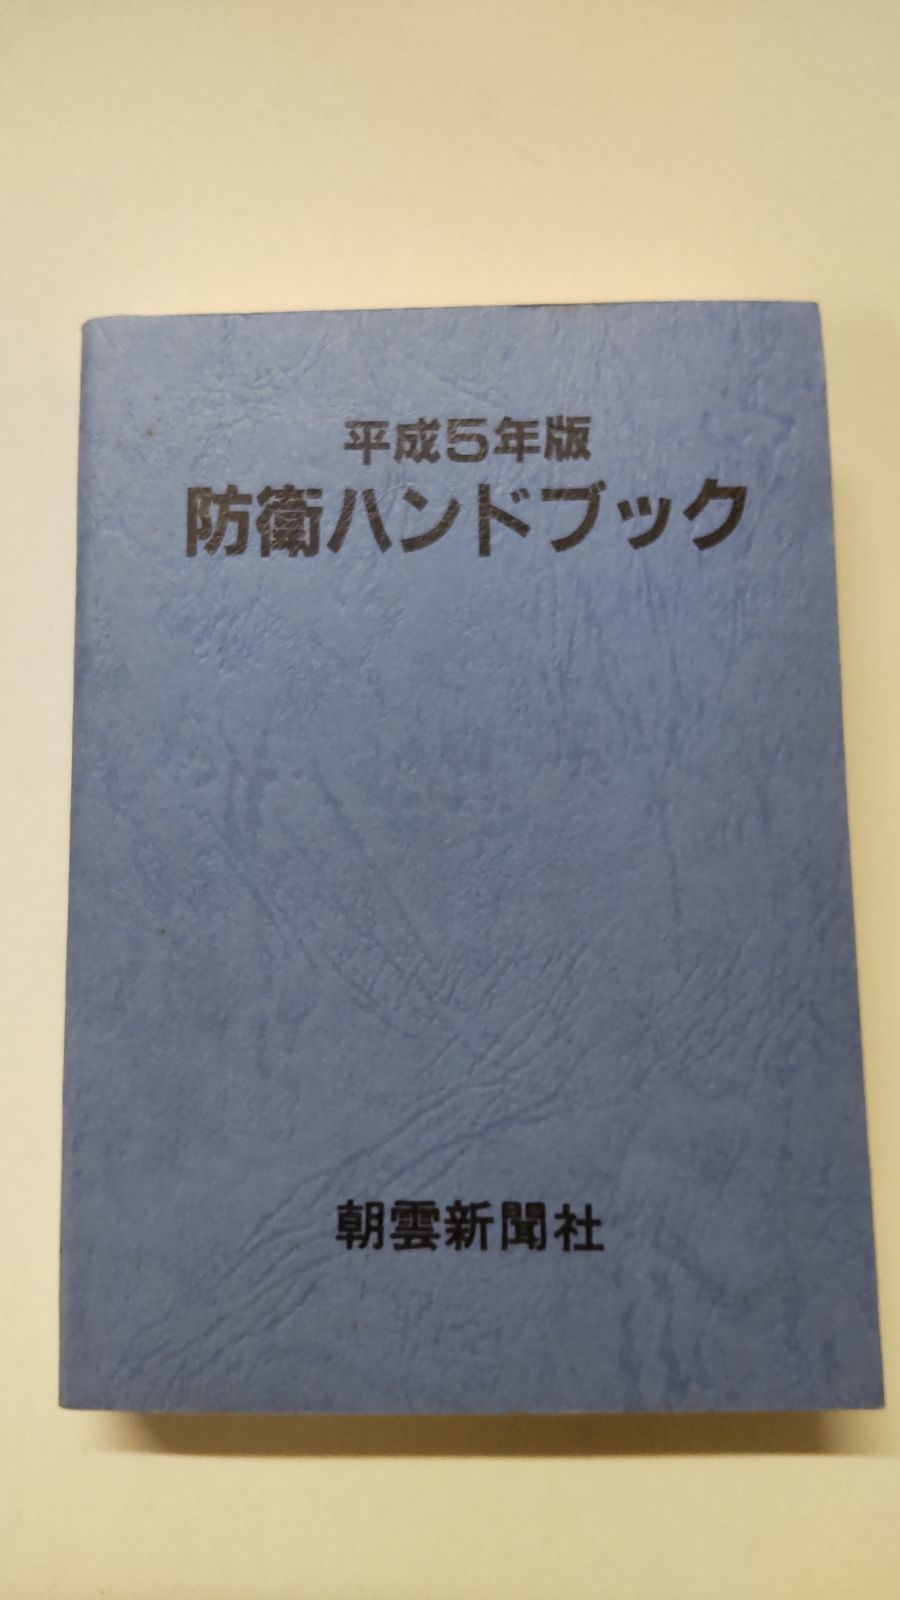 防衛ハンドブック 平成5年版 朝雲新聞社 - メルカリ